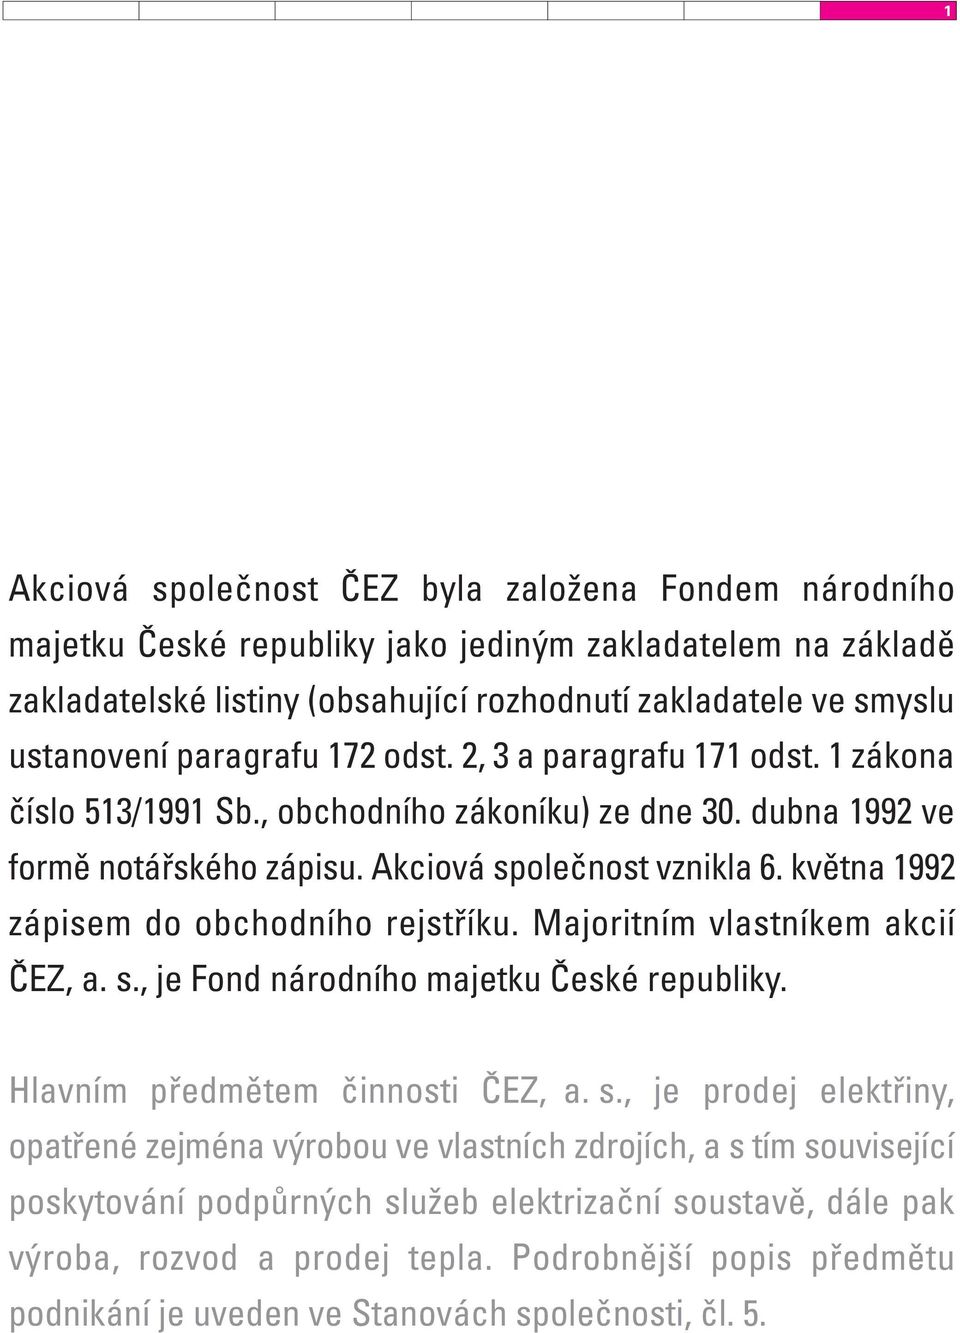 května 1992 zápisem do obchodního rejstříku. Majoritním vlastníkem akcií ČEZ, a. s.